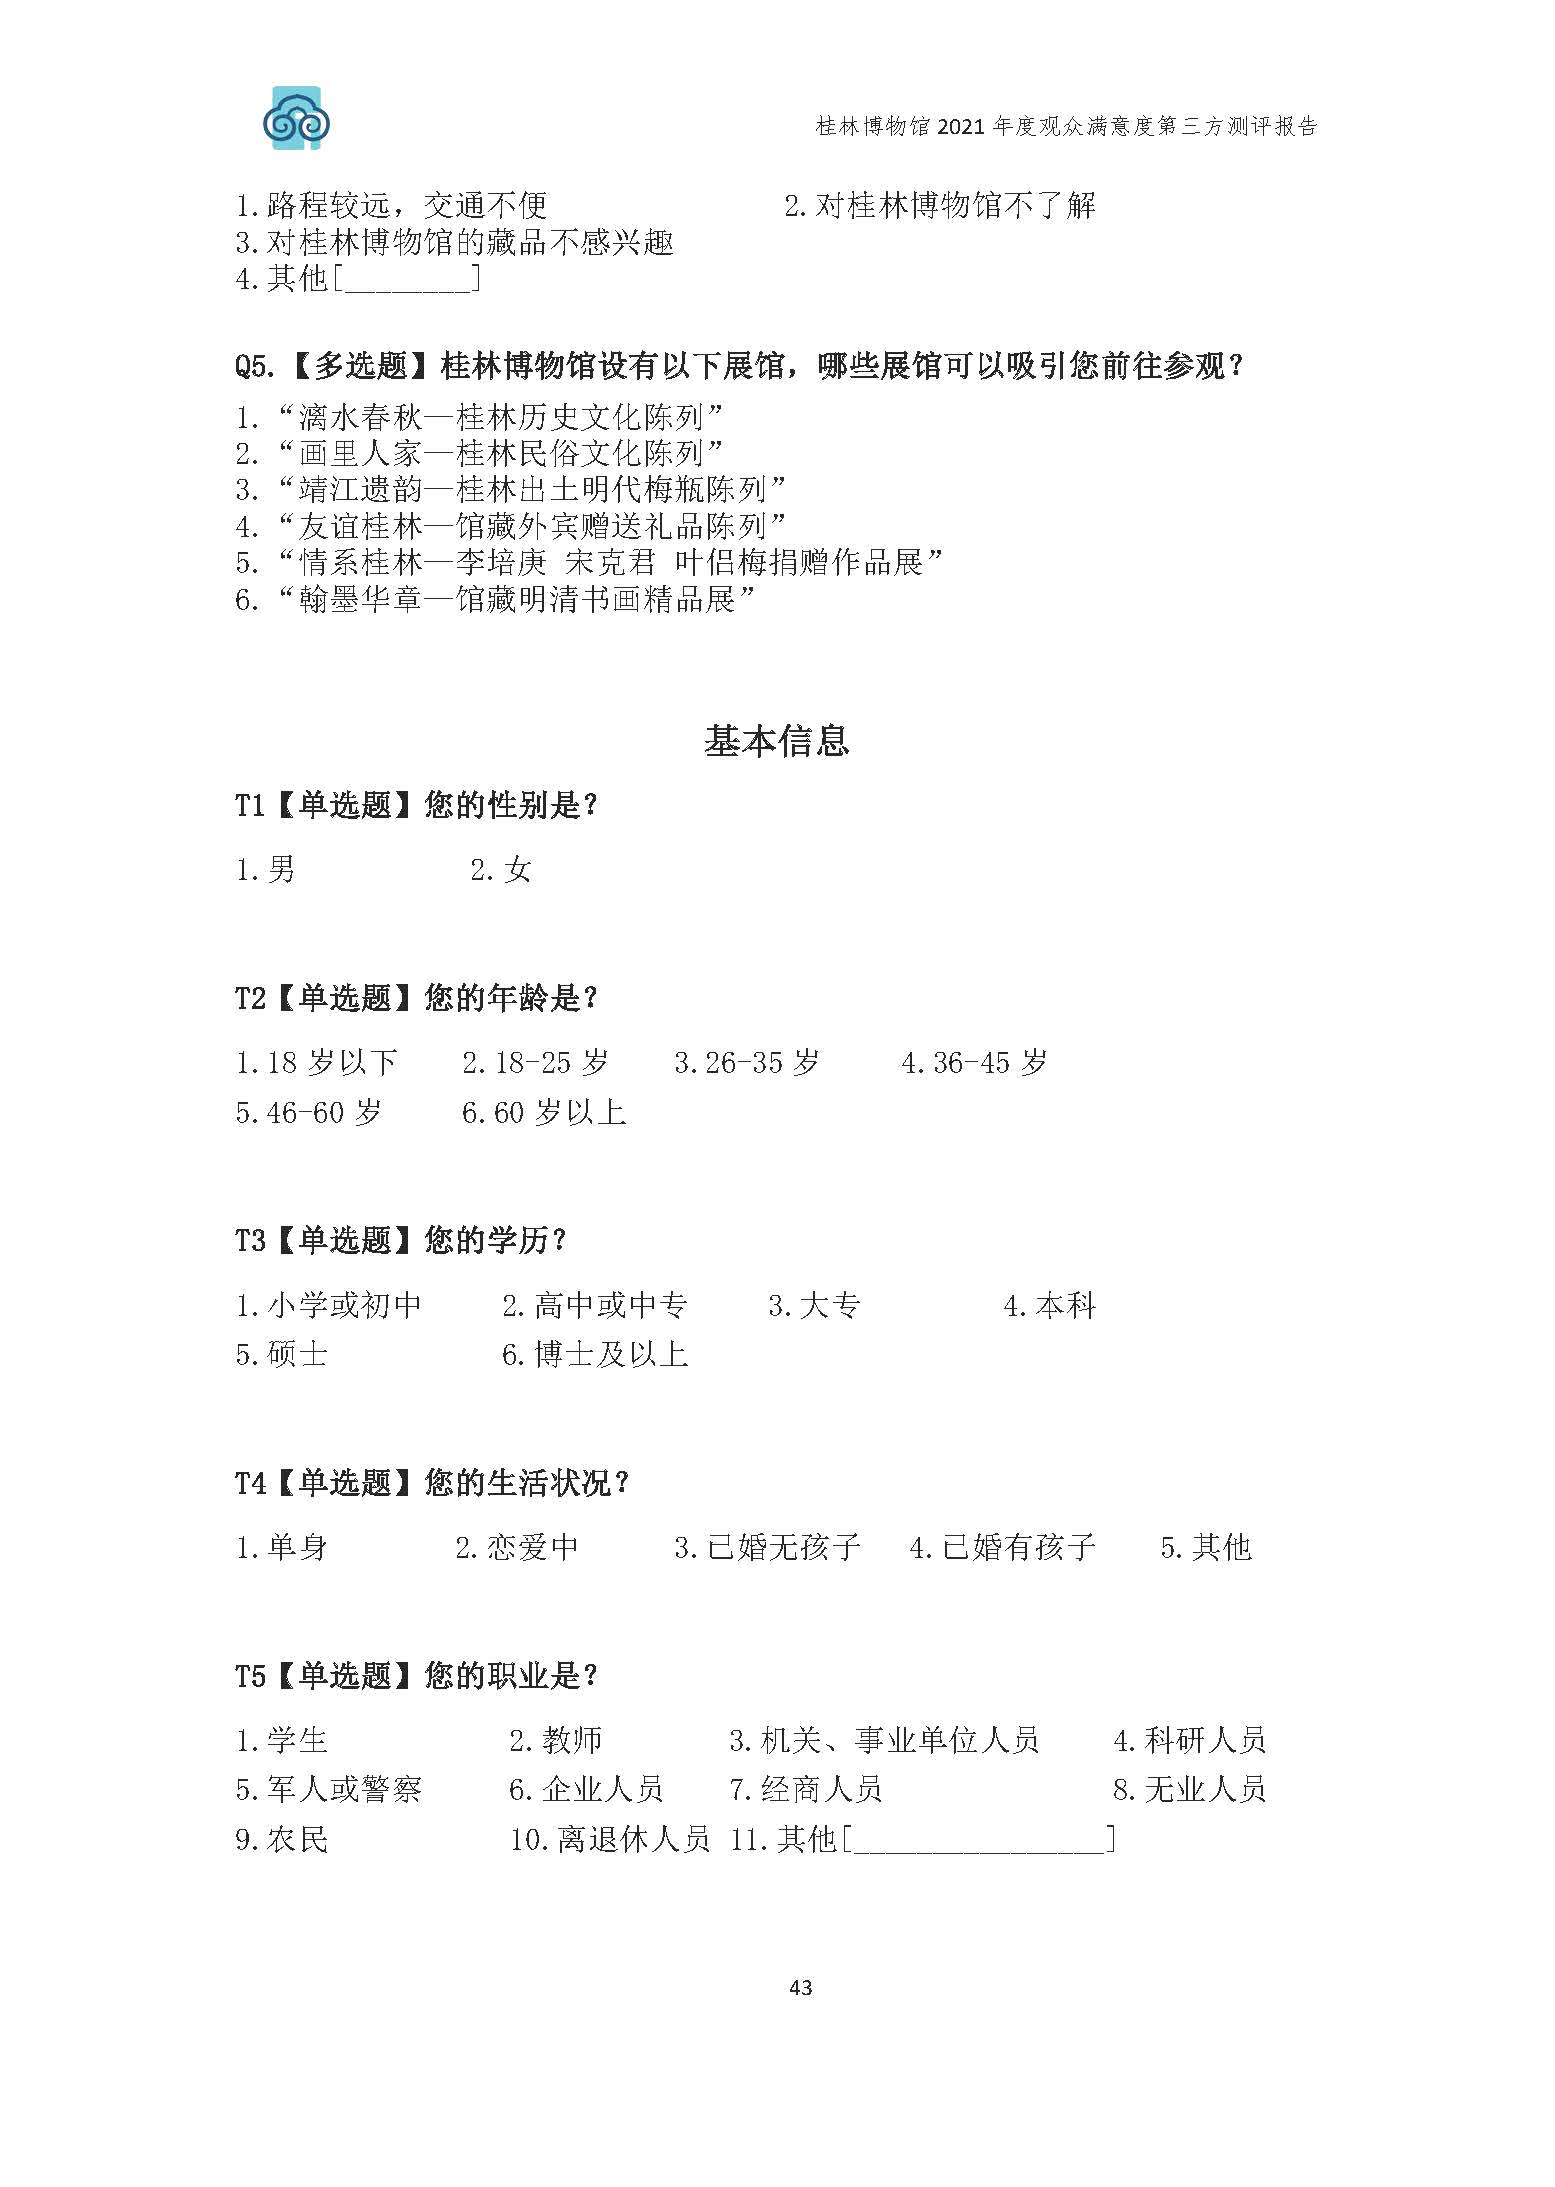 2021年桂林博物馆参观观众满意度调查报告_v3_页面_46.jpg